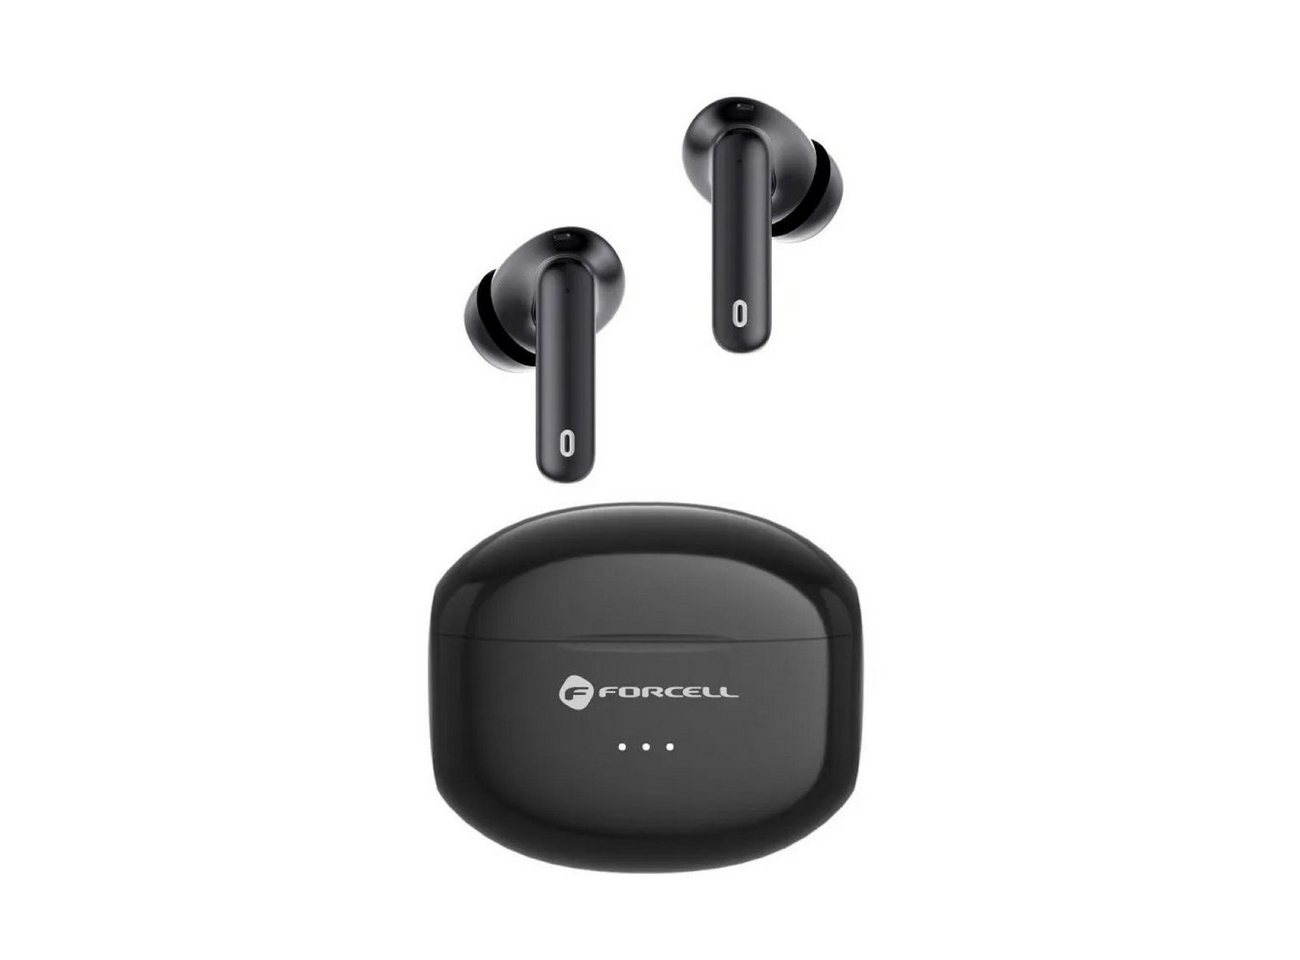 Forcell F-AUDIO drahtgebundene Ohrhörer TWS Clear Sound schwarz 320 mAh Bluetooth-Kopfhörer von Forcell